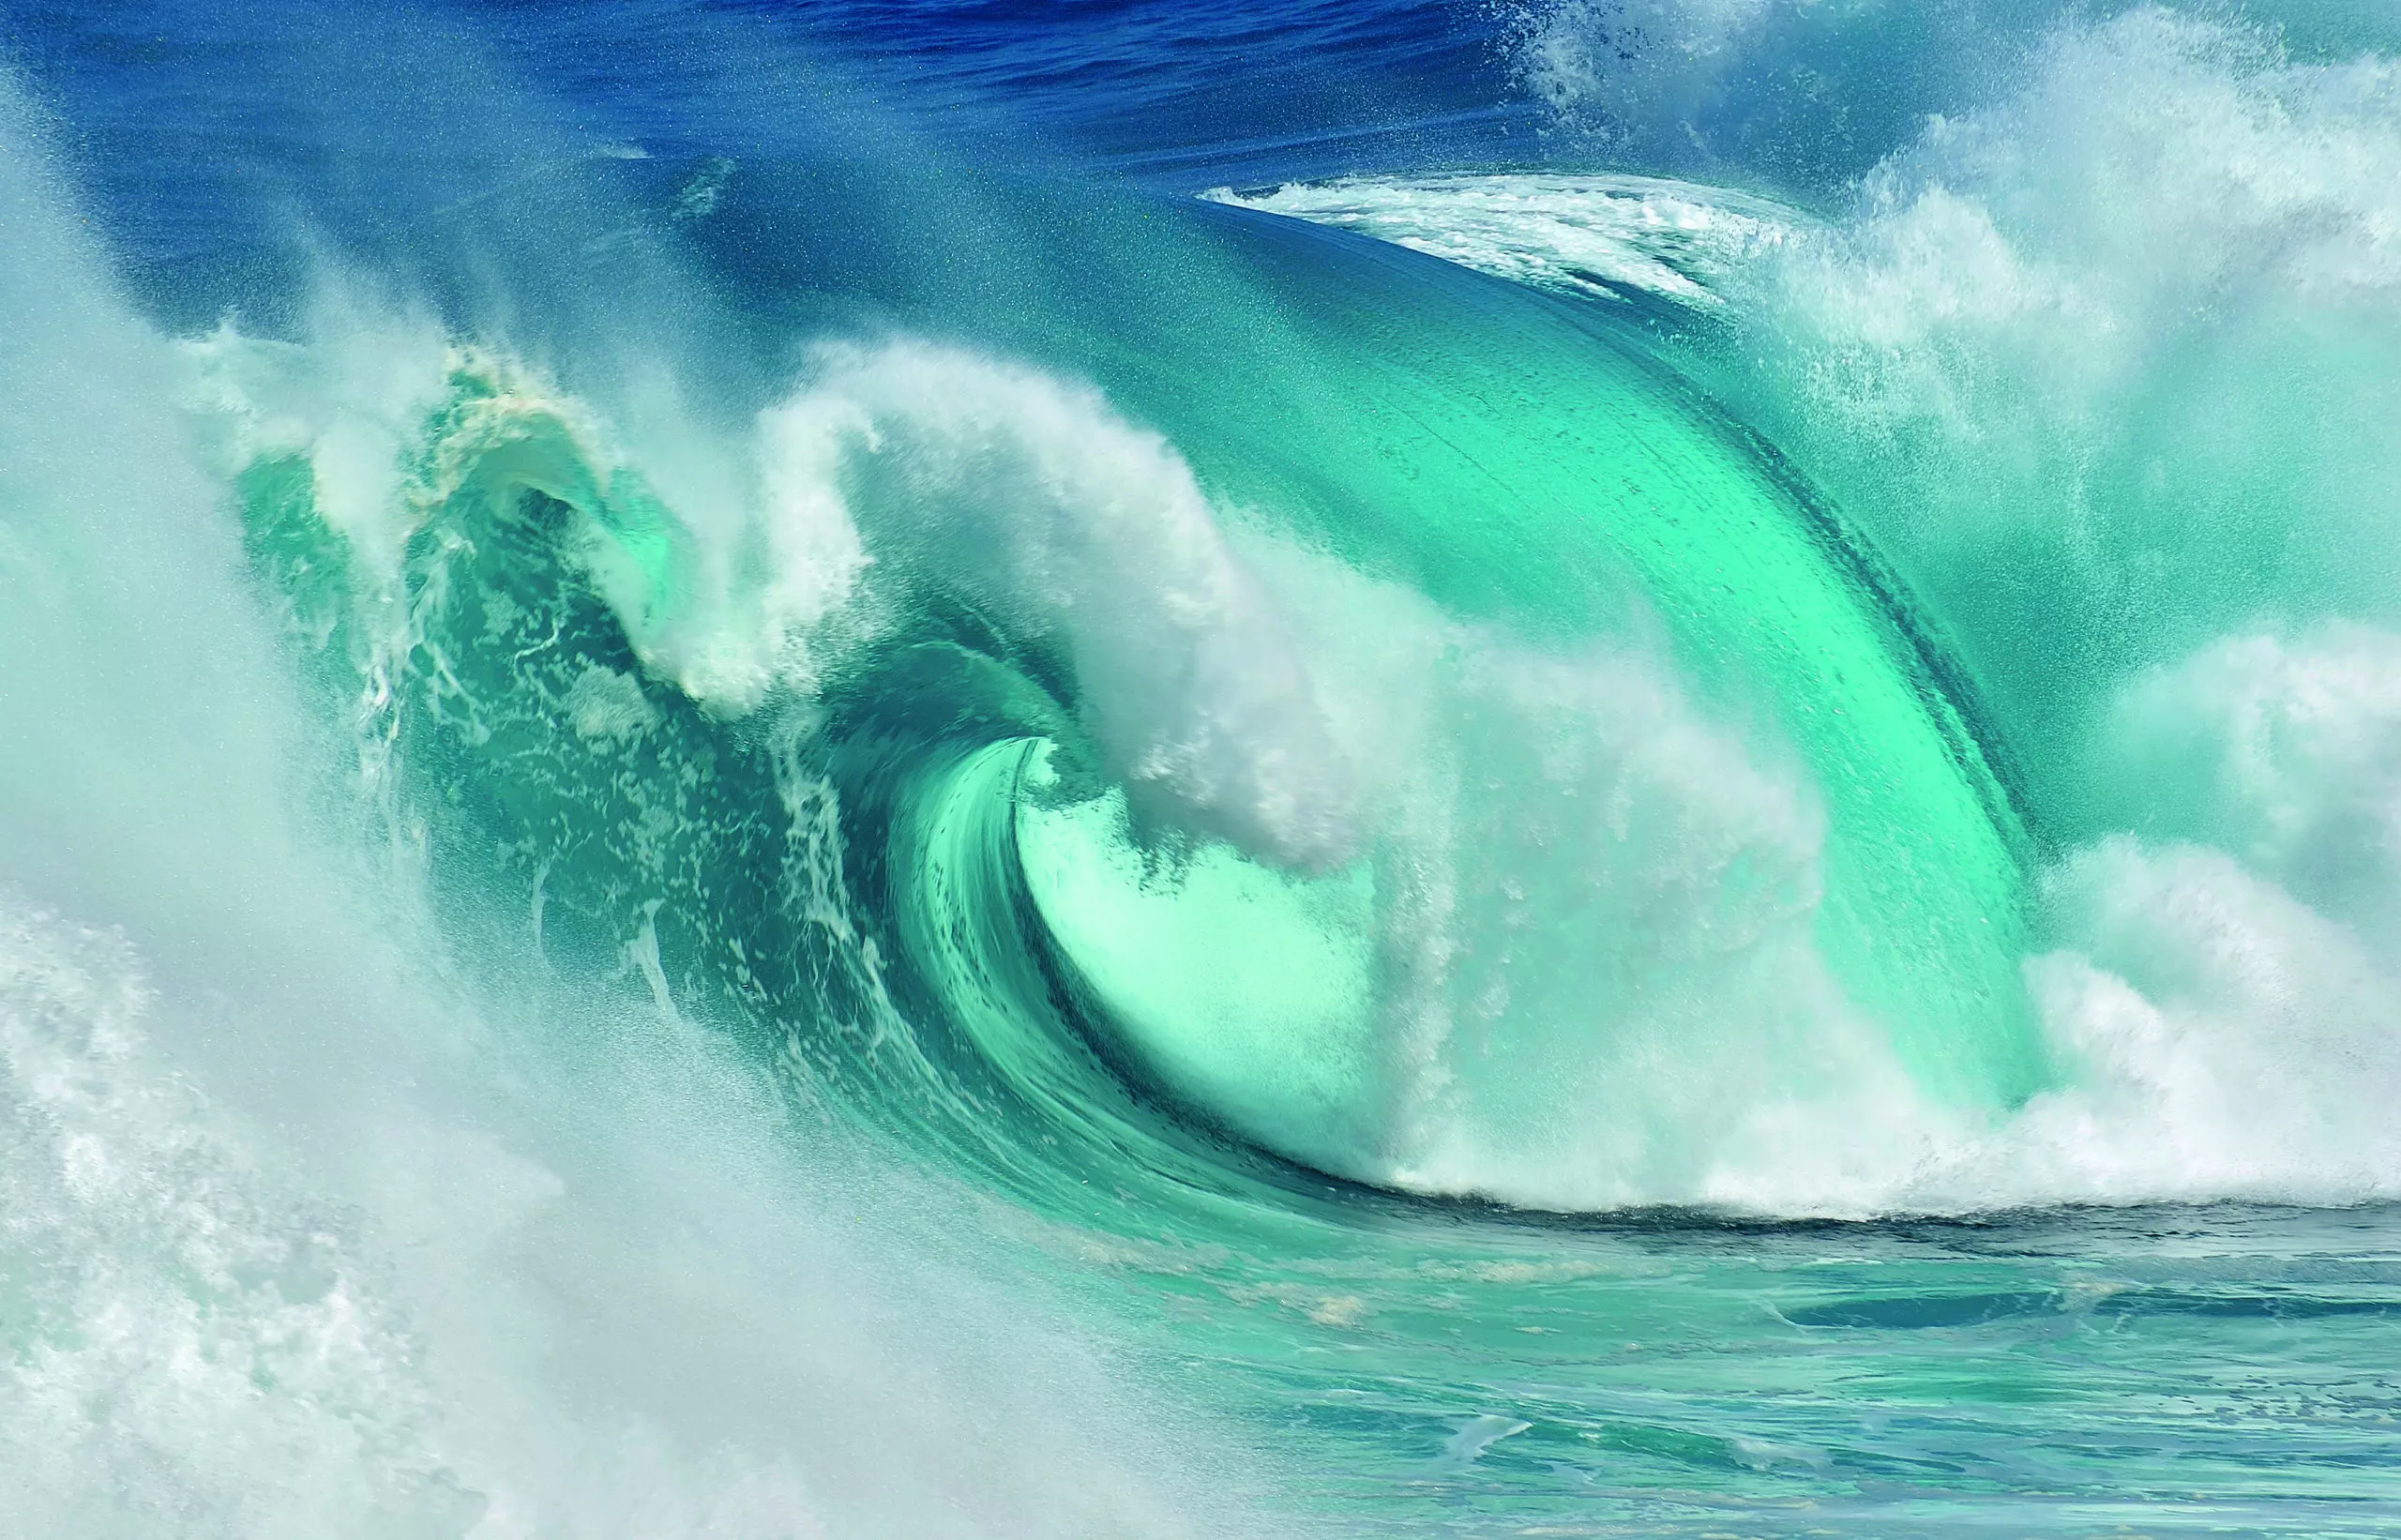 Wandbild (5133) When the ocean turns into blue fire by Daniel Montero präsentiert: Aktion-Bewegung,Wasser,Details und Strukturen,Natur,Aktion pur,Meere,Sonstige Naturdetails